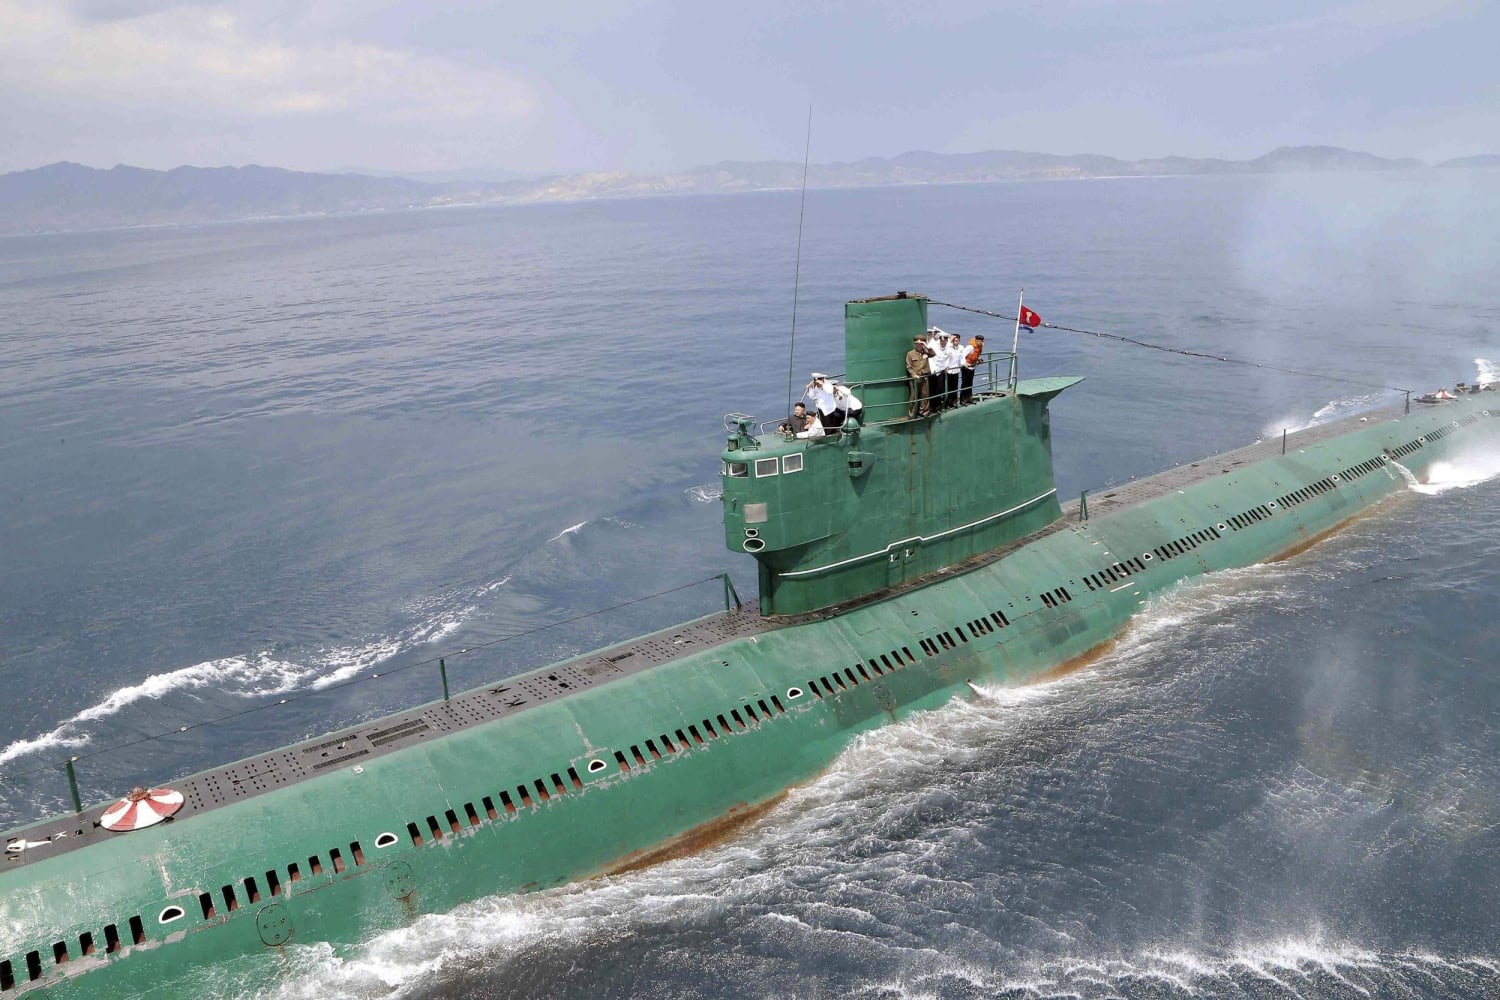 http://media2.s-nbcnews.com/i/newscms/2014_25/510951/140616-kim-jong-un-submarine-1119a_dfab2b173690990df4b54831961d3f21.jpg